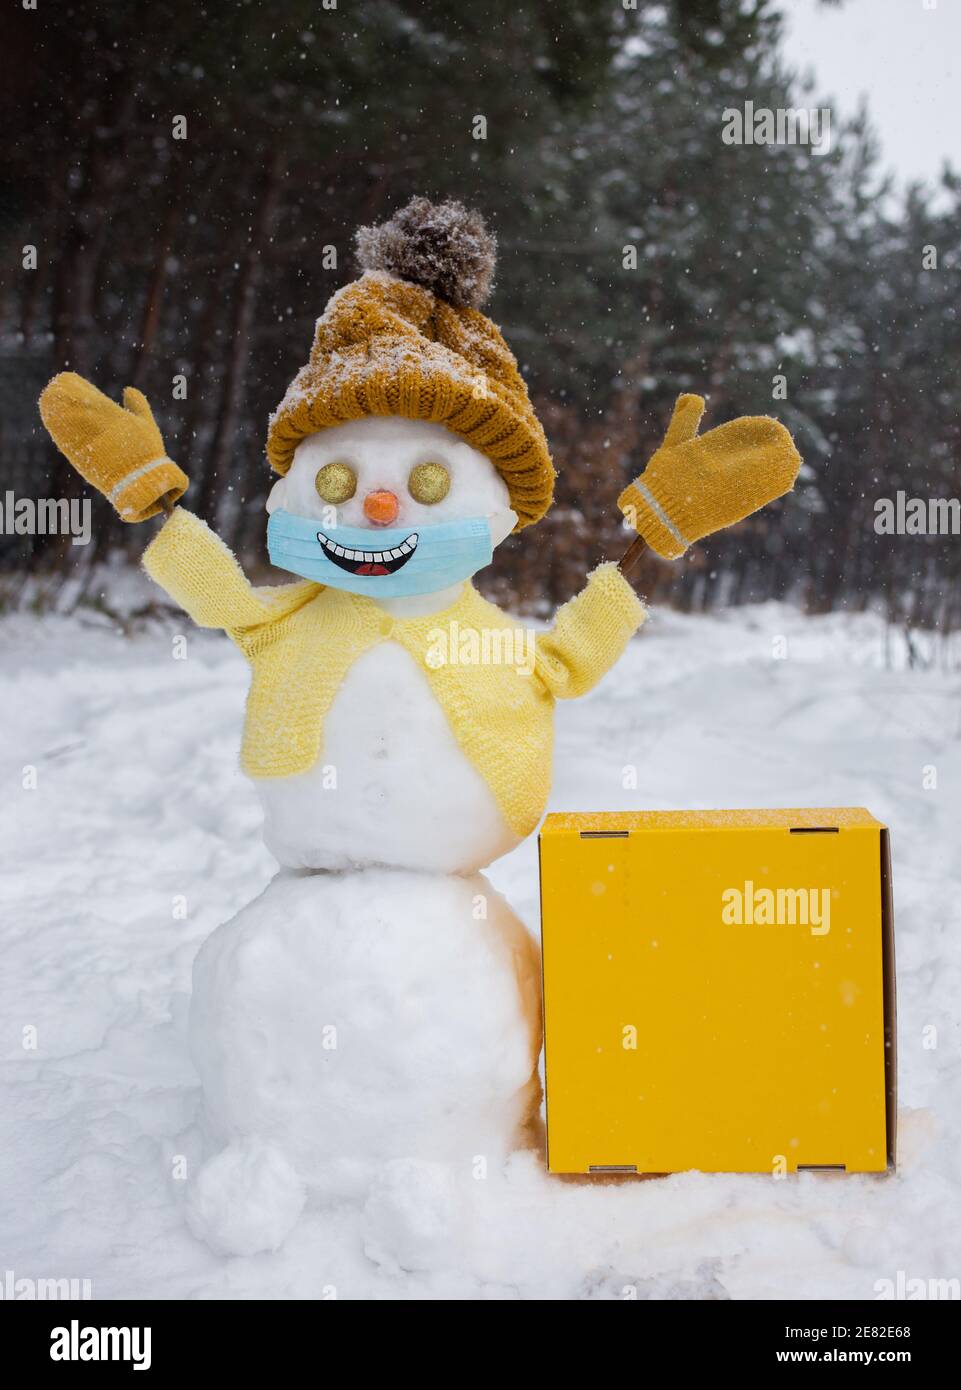 Felice pupazzo di neve in giallo maglia cappello, giacca, guanti e maschera  medica con sorriso dipinto su di esso. Nelle vicinanze si trova una scatola  di cartone giallo brillante con spazio per